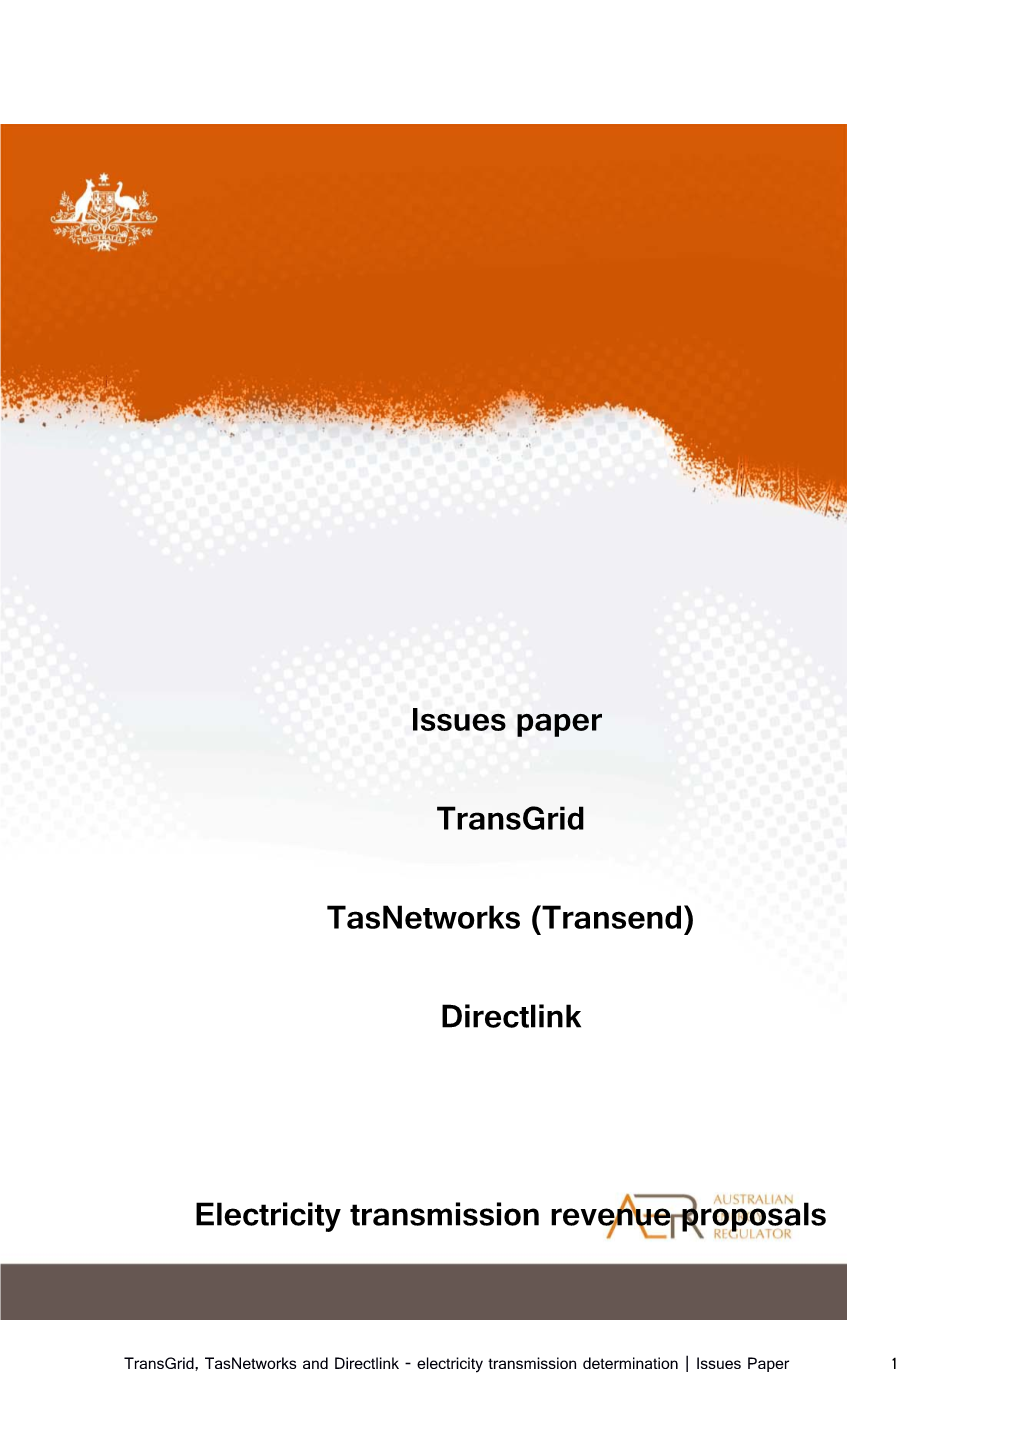 Electricity Transmission Revenue Proposals